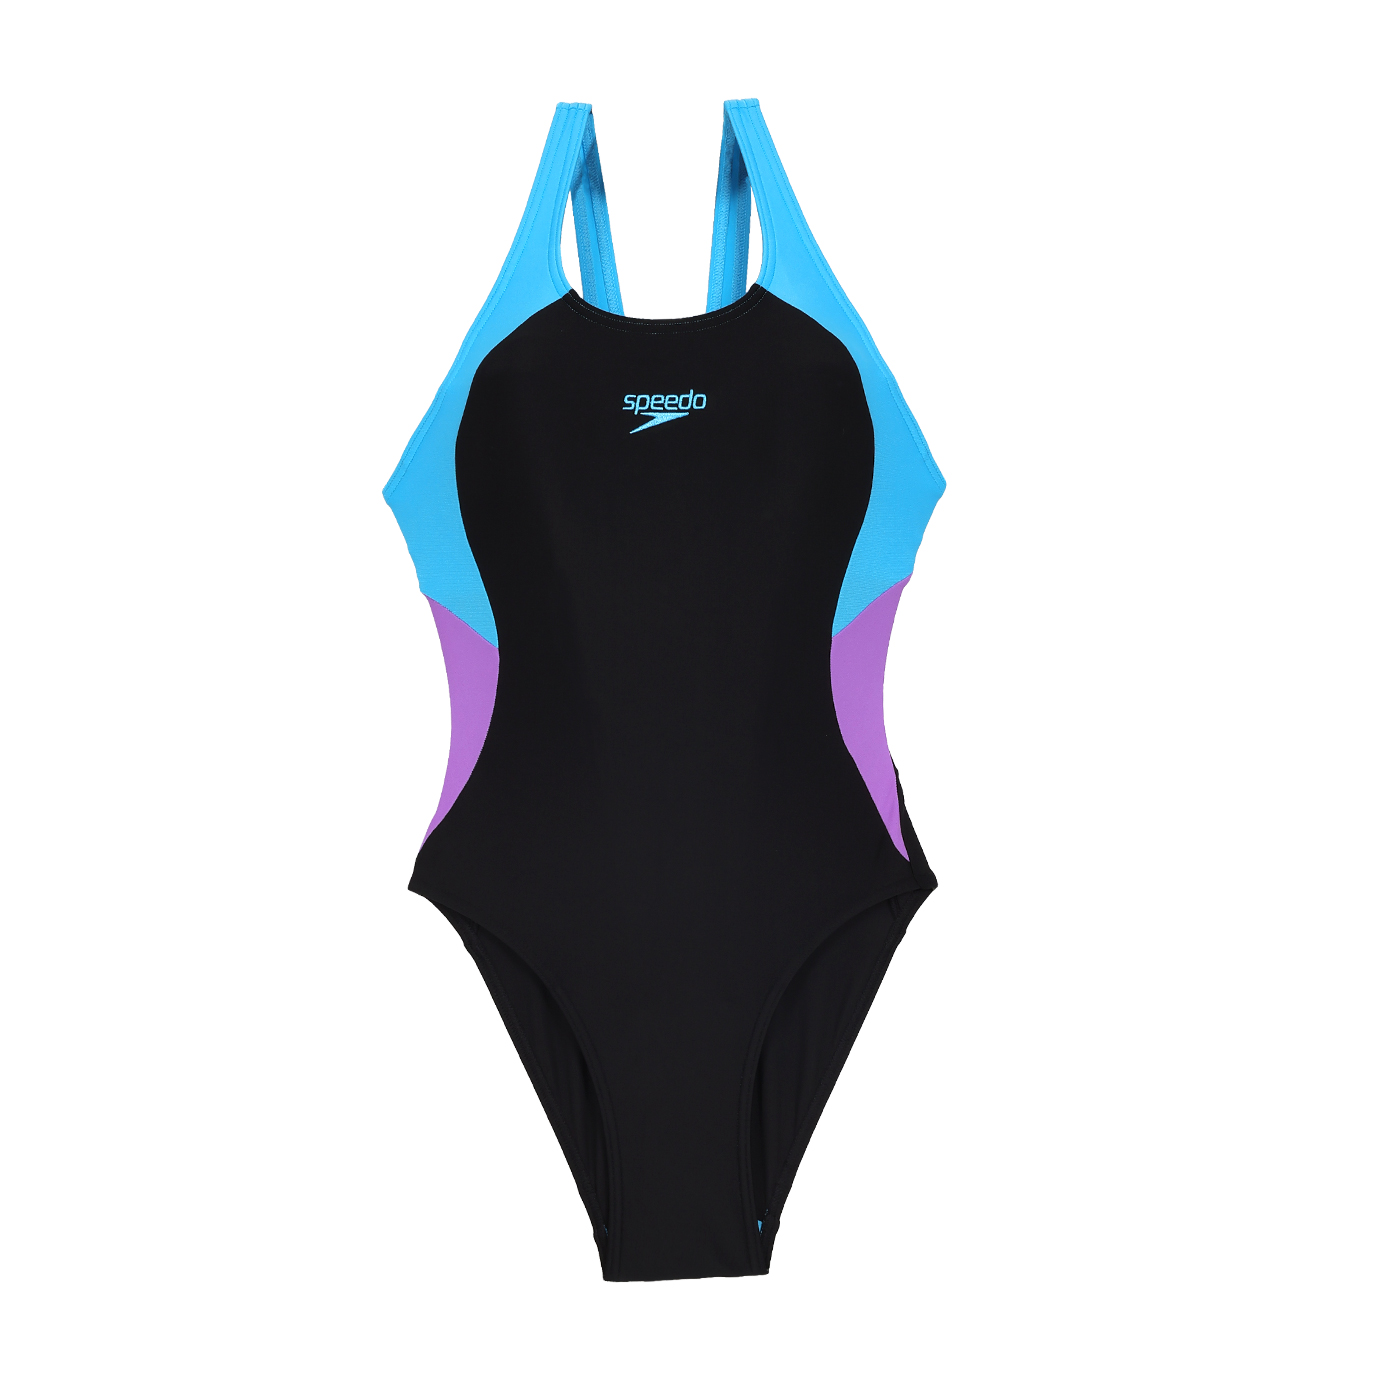 SPEEDO 女款運動連身泳裝Colourblock  SD800440816661 - 黑水藍紫